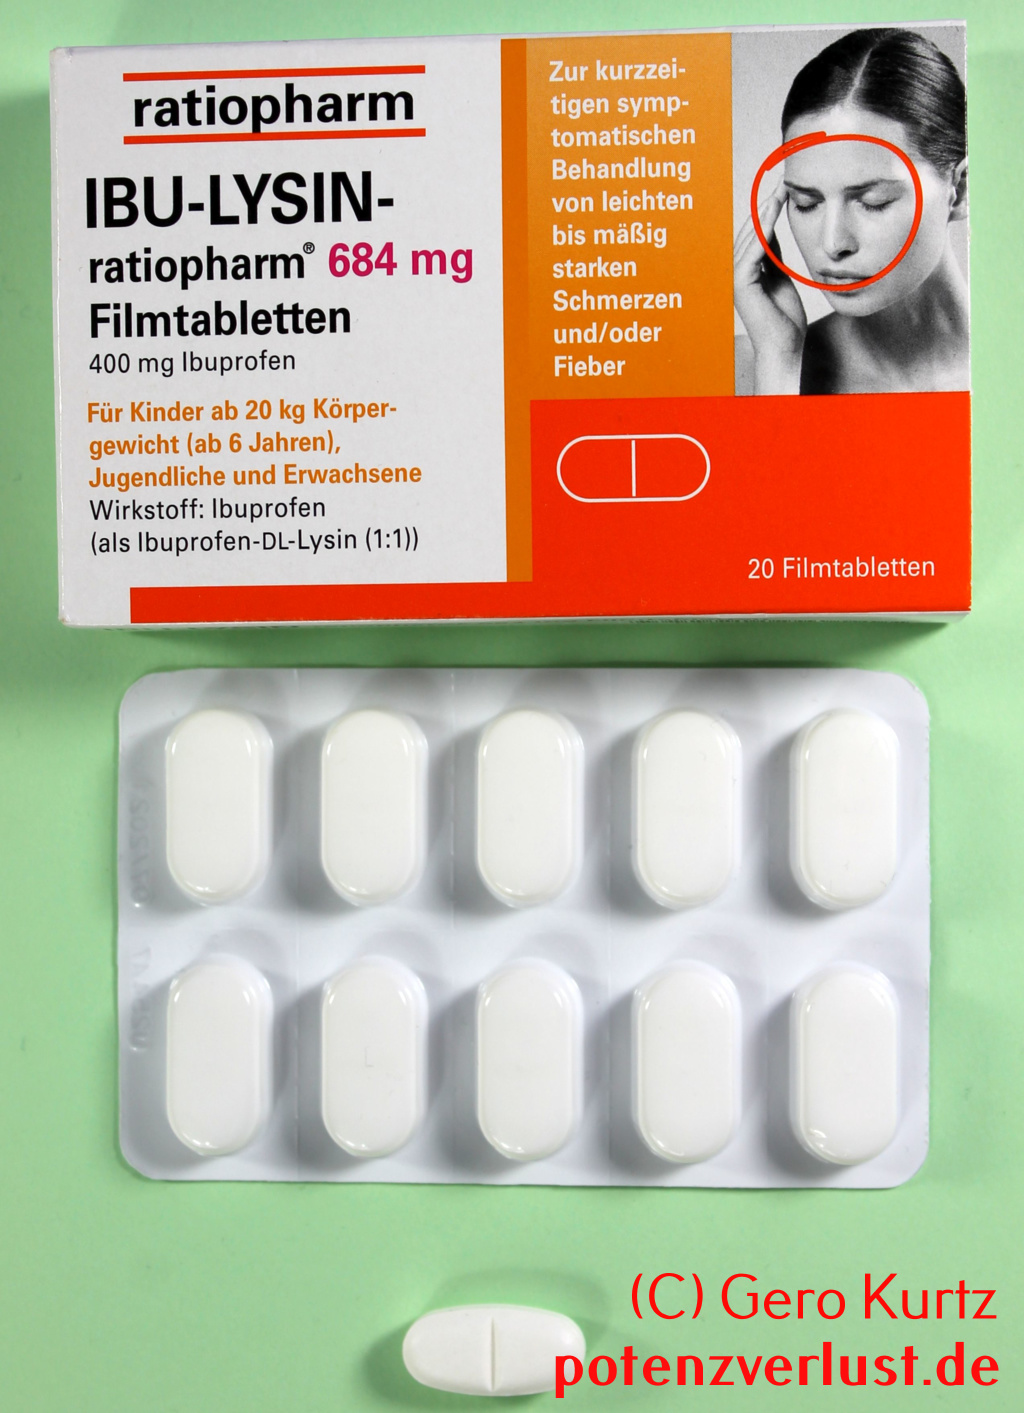 Ibu-Lysin von Ratiopharm Verpackung und Tablettenblister